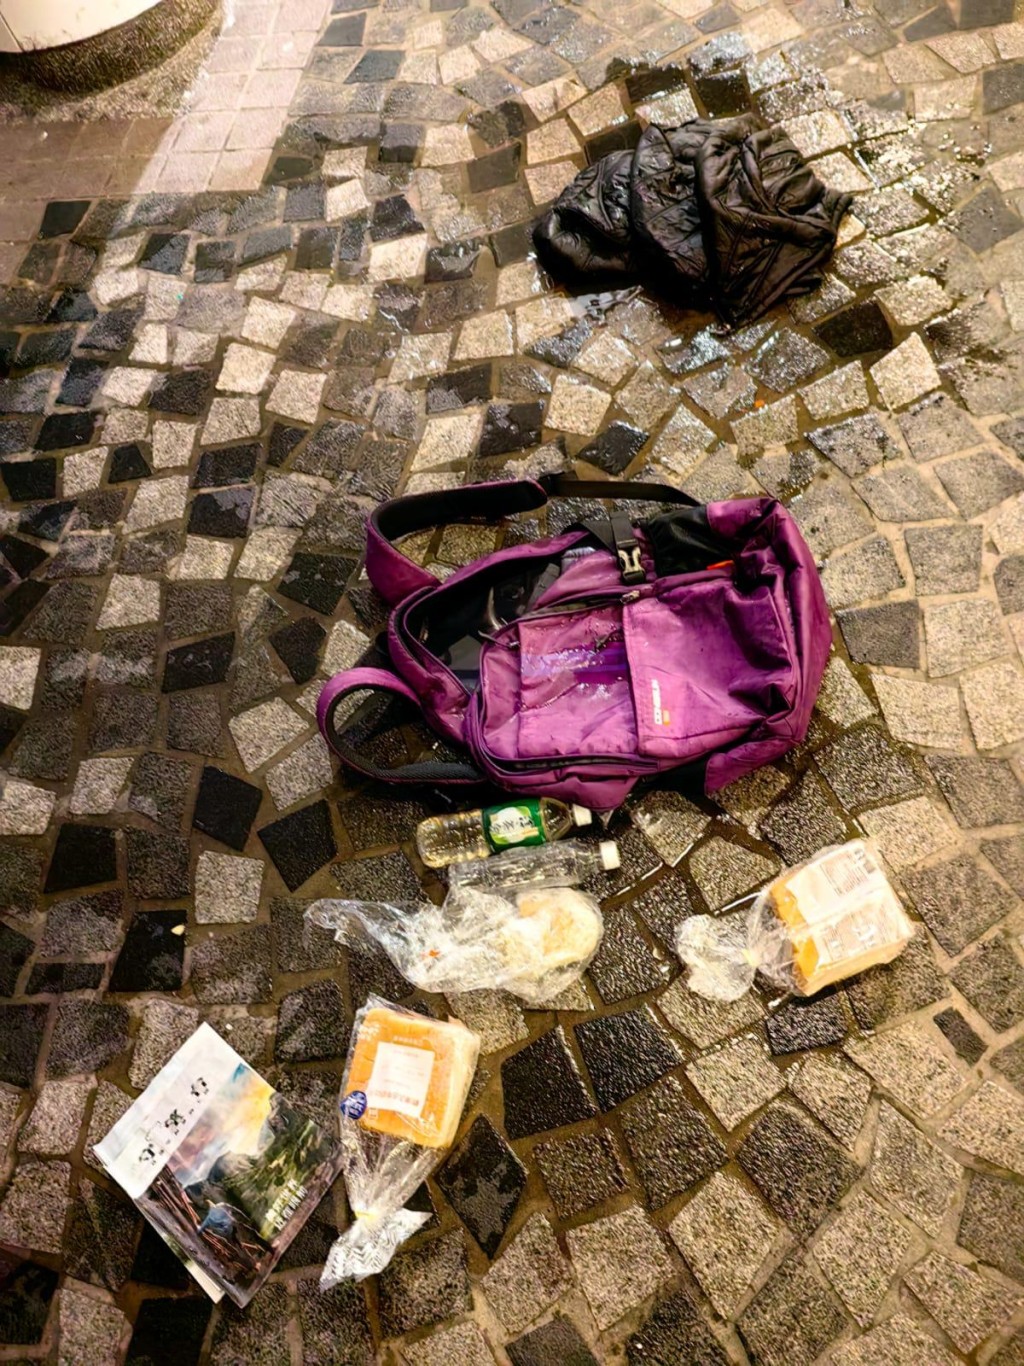 死者的背包及其個人財物。警方提供